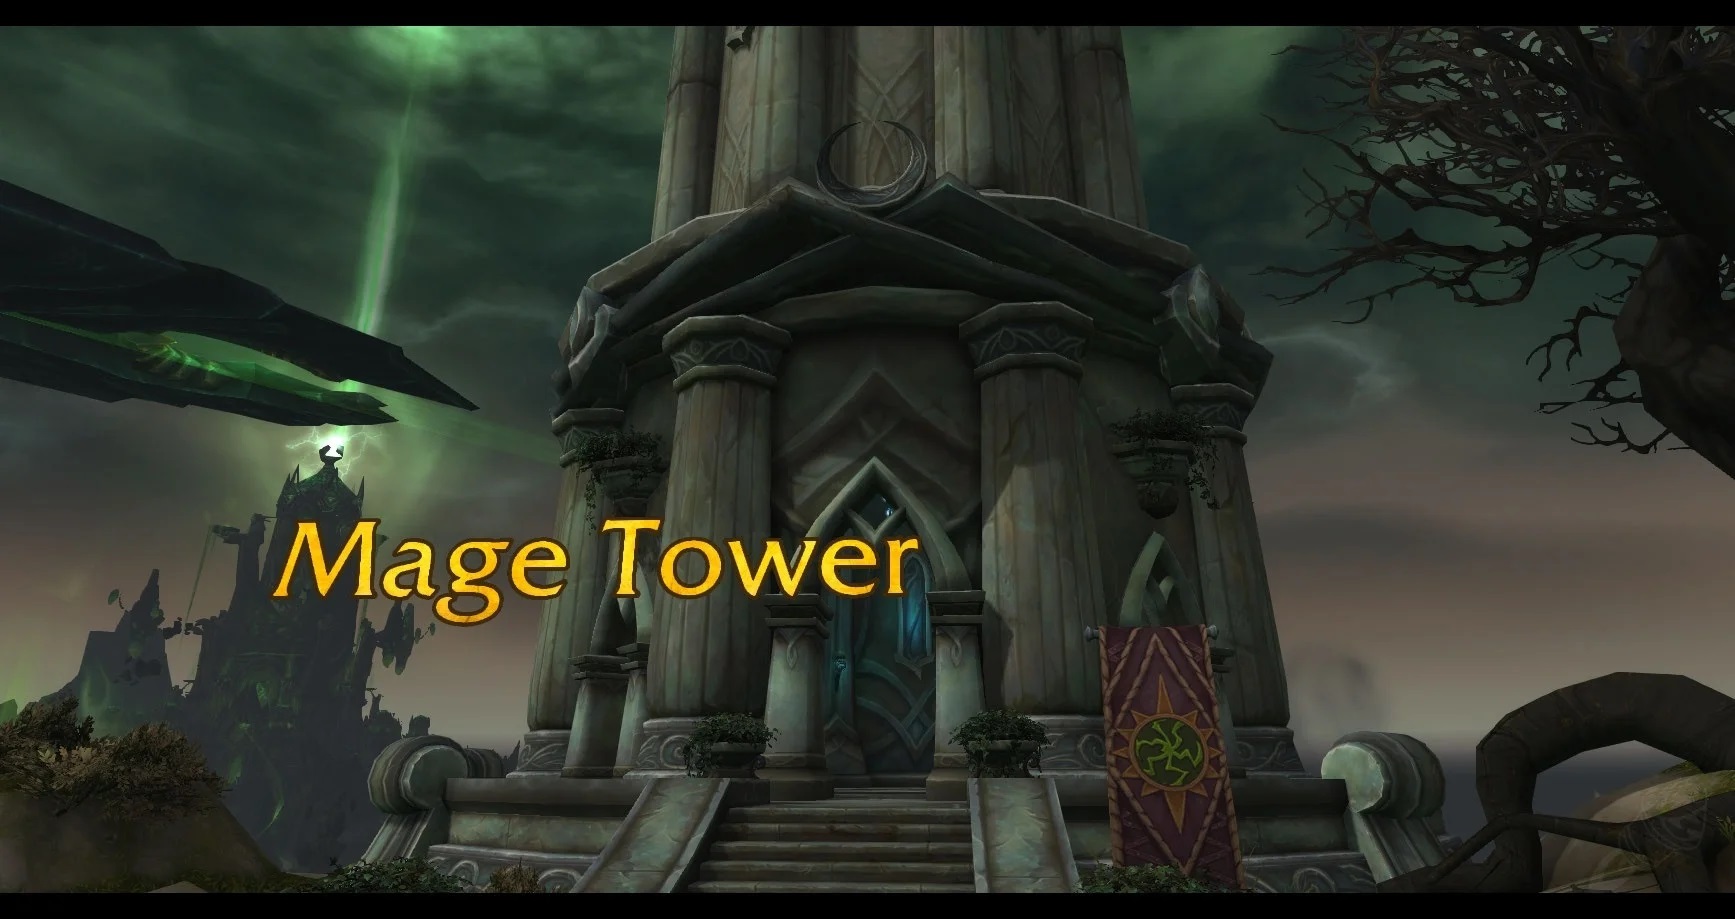 Mage Tower wraca na stałe do World of Warcraft dzięki prośbom graczy!